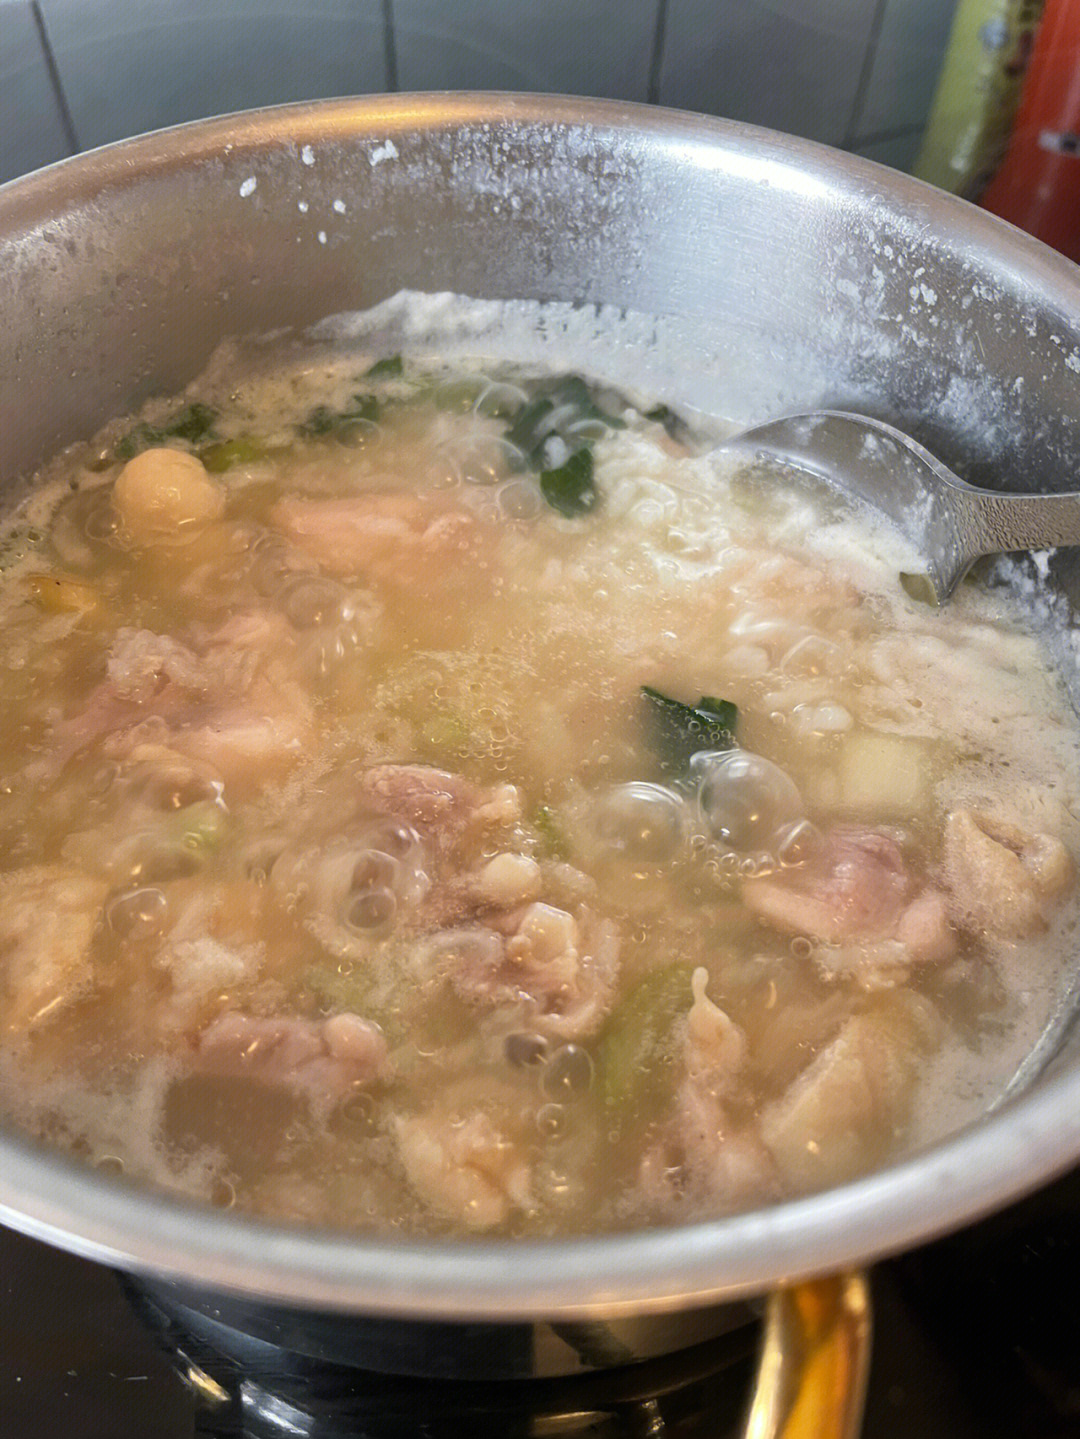 太鲜了有潮汕砂锅粥那个味儿了(自封)而且做法巨简单,我估计做汤面